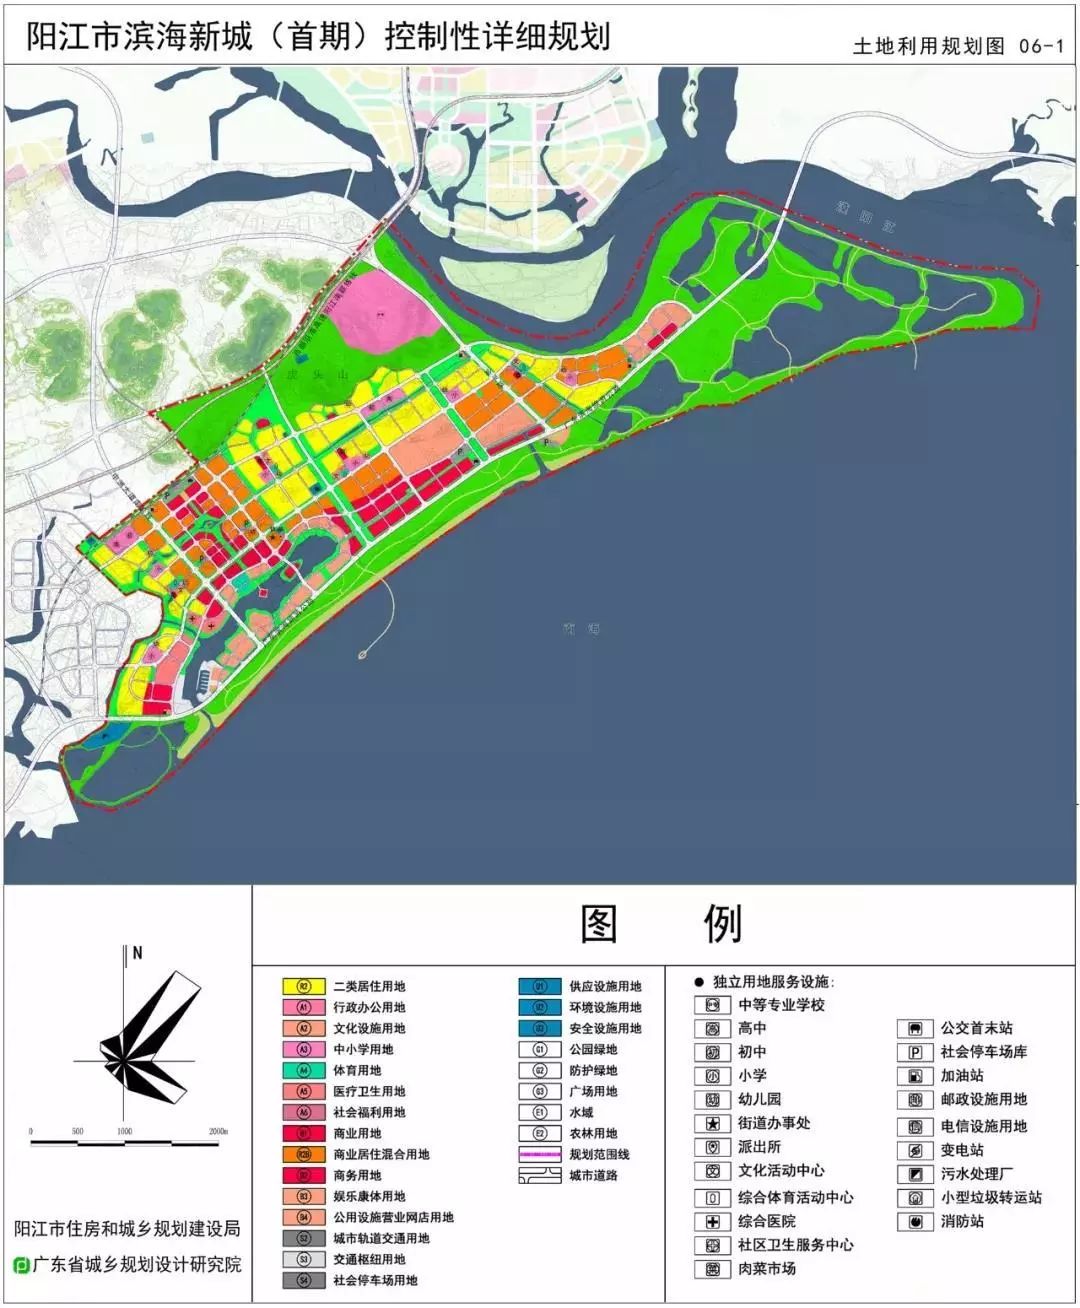 根据城南布局规划,包括阳江市歌剧院,阳江市演艺中心,城南市级图书馆